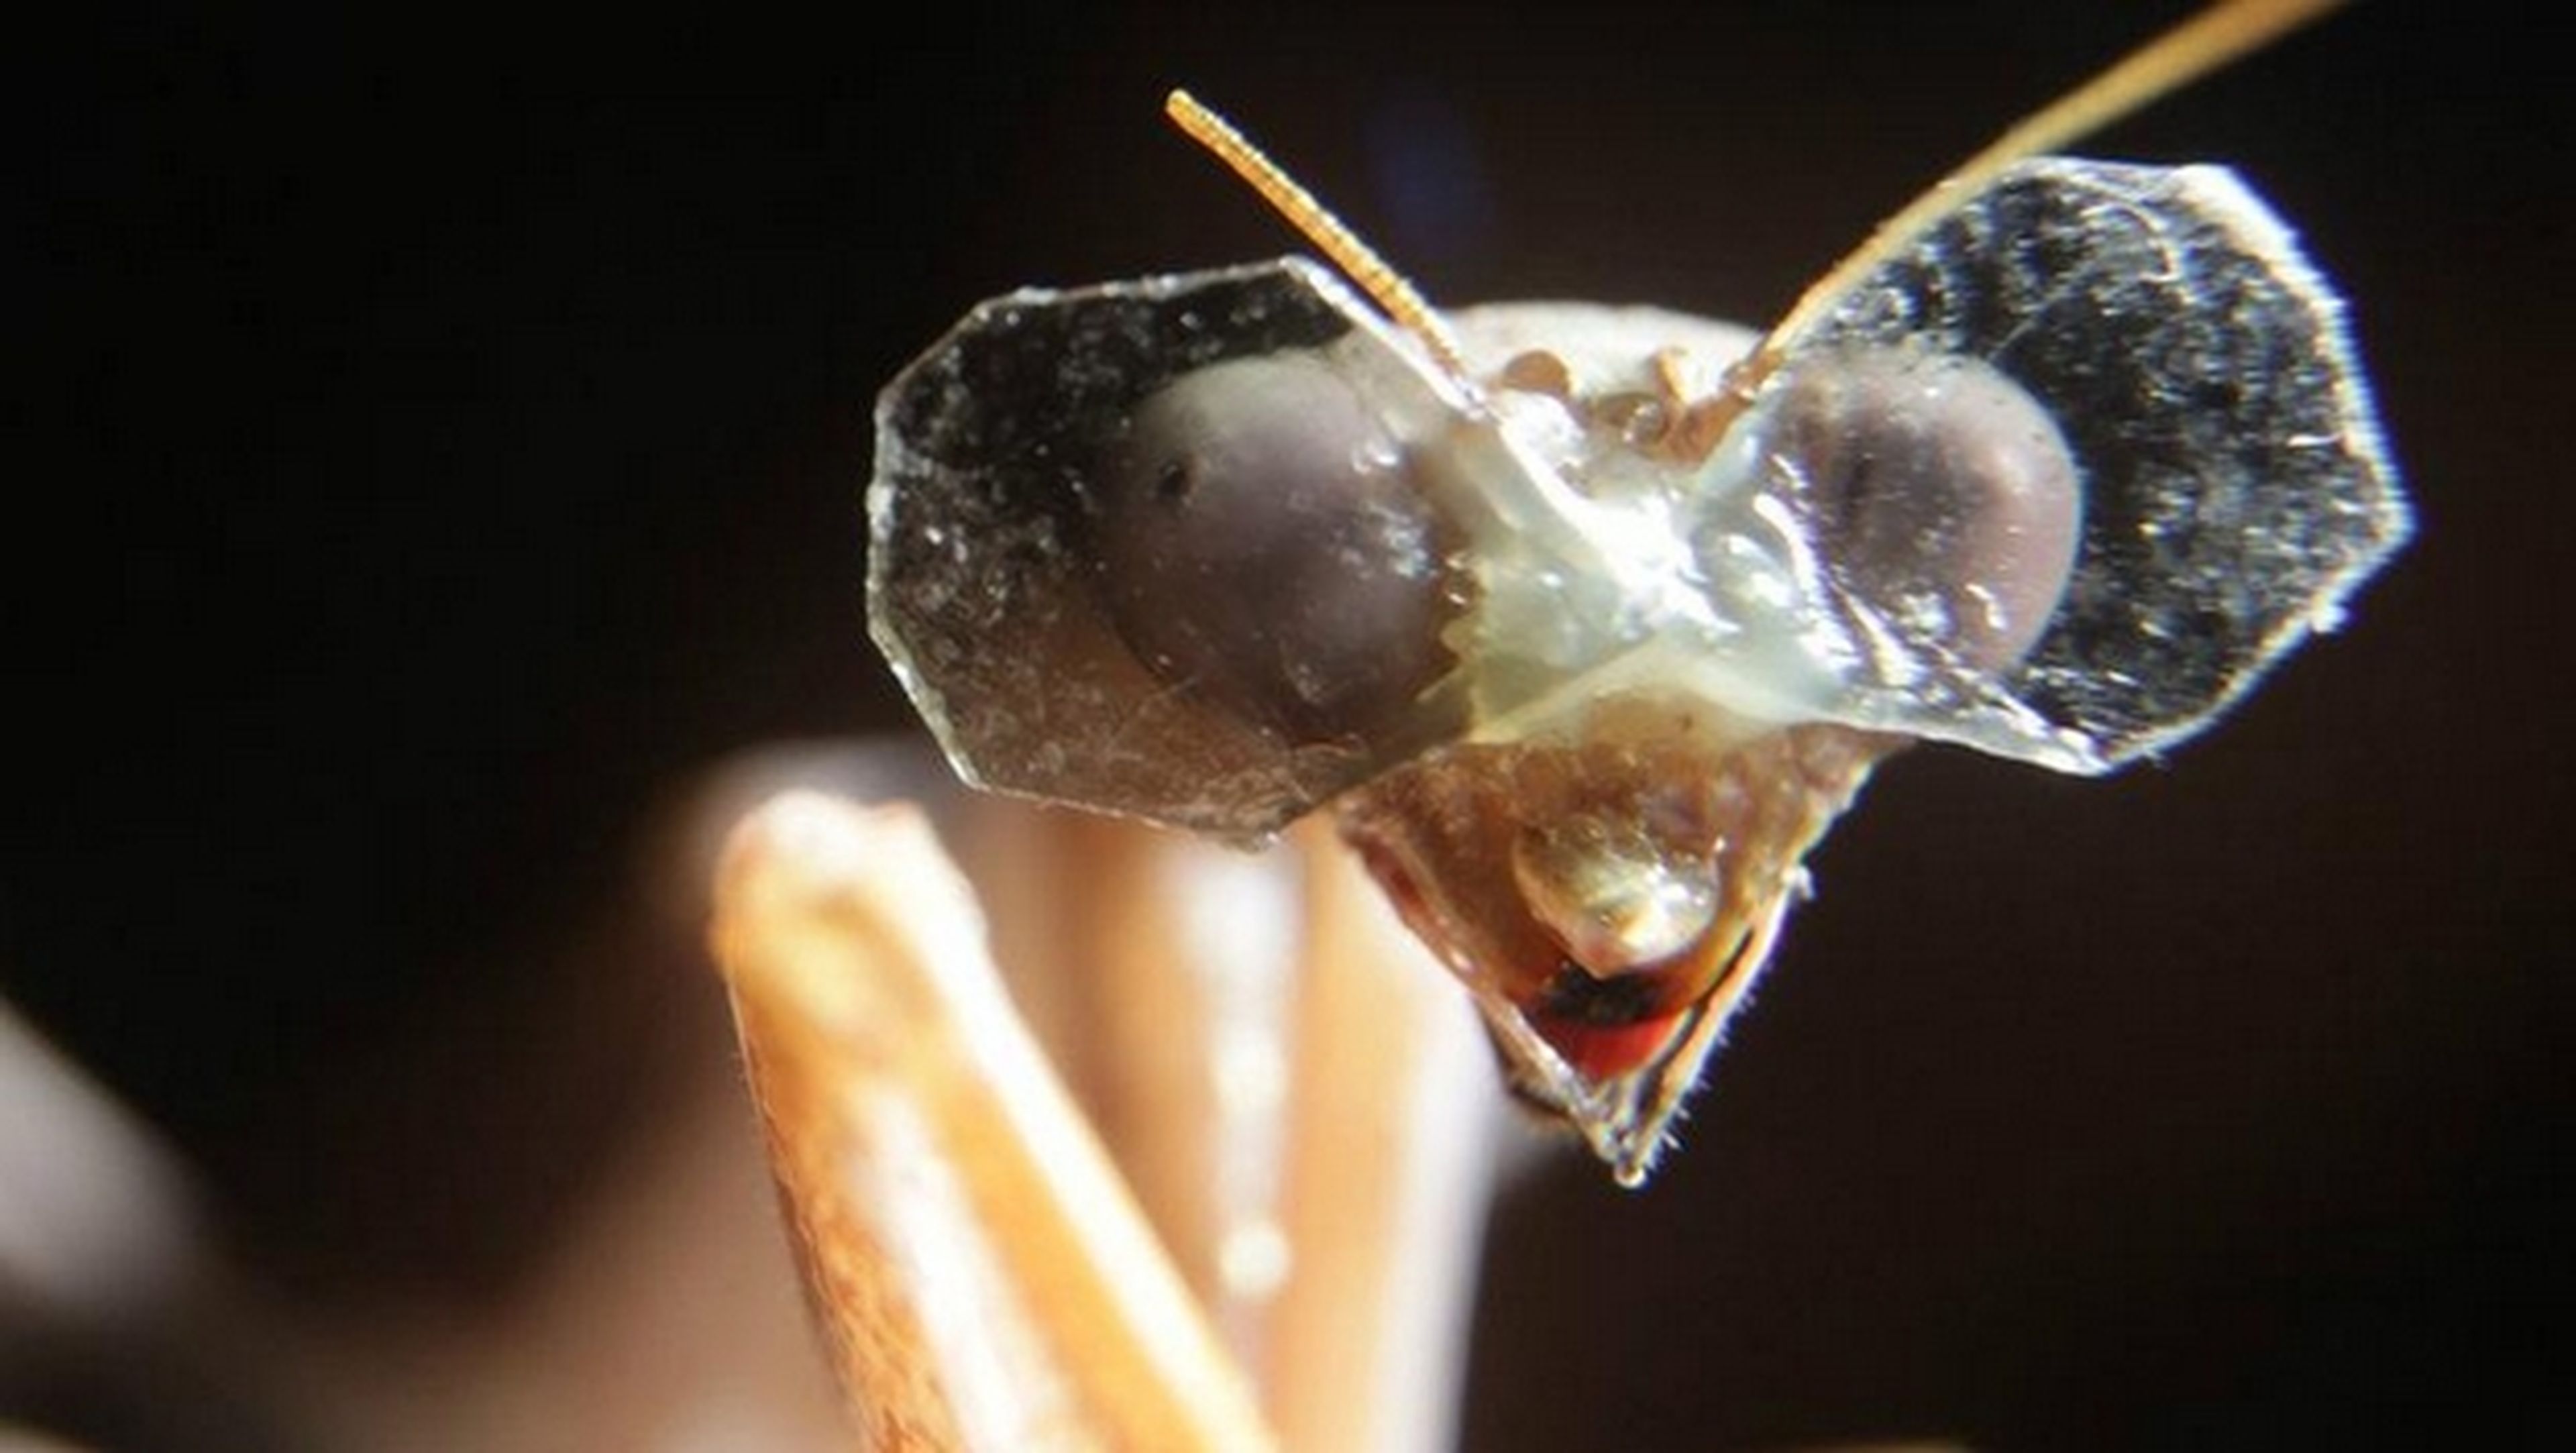 Inventan gafas 3D para insectos, se las ponen a una mantis religiosa. El objetivo es aplicar la visión 3D a drones y robots